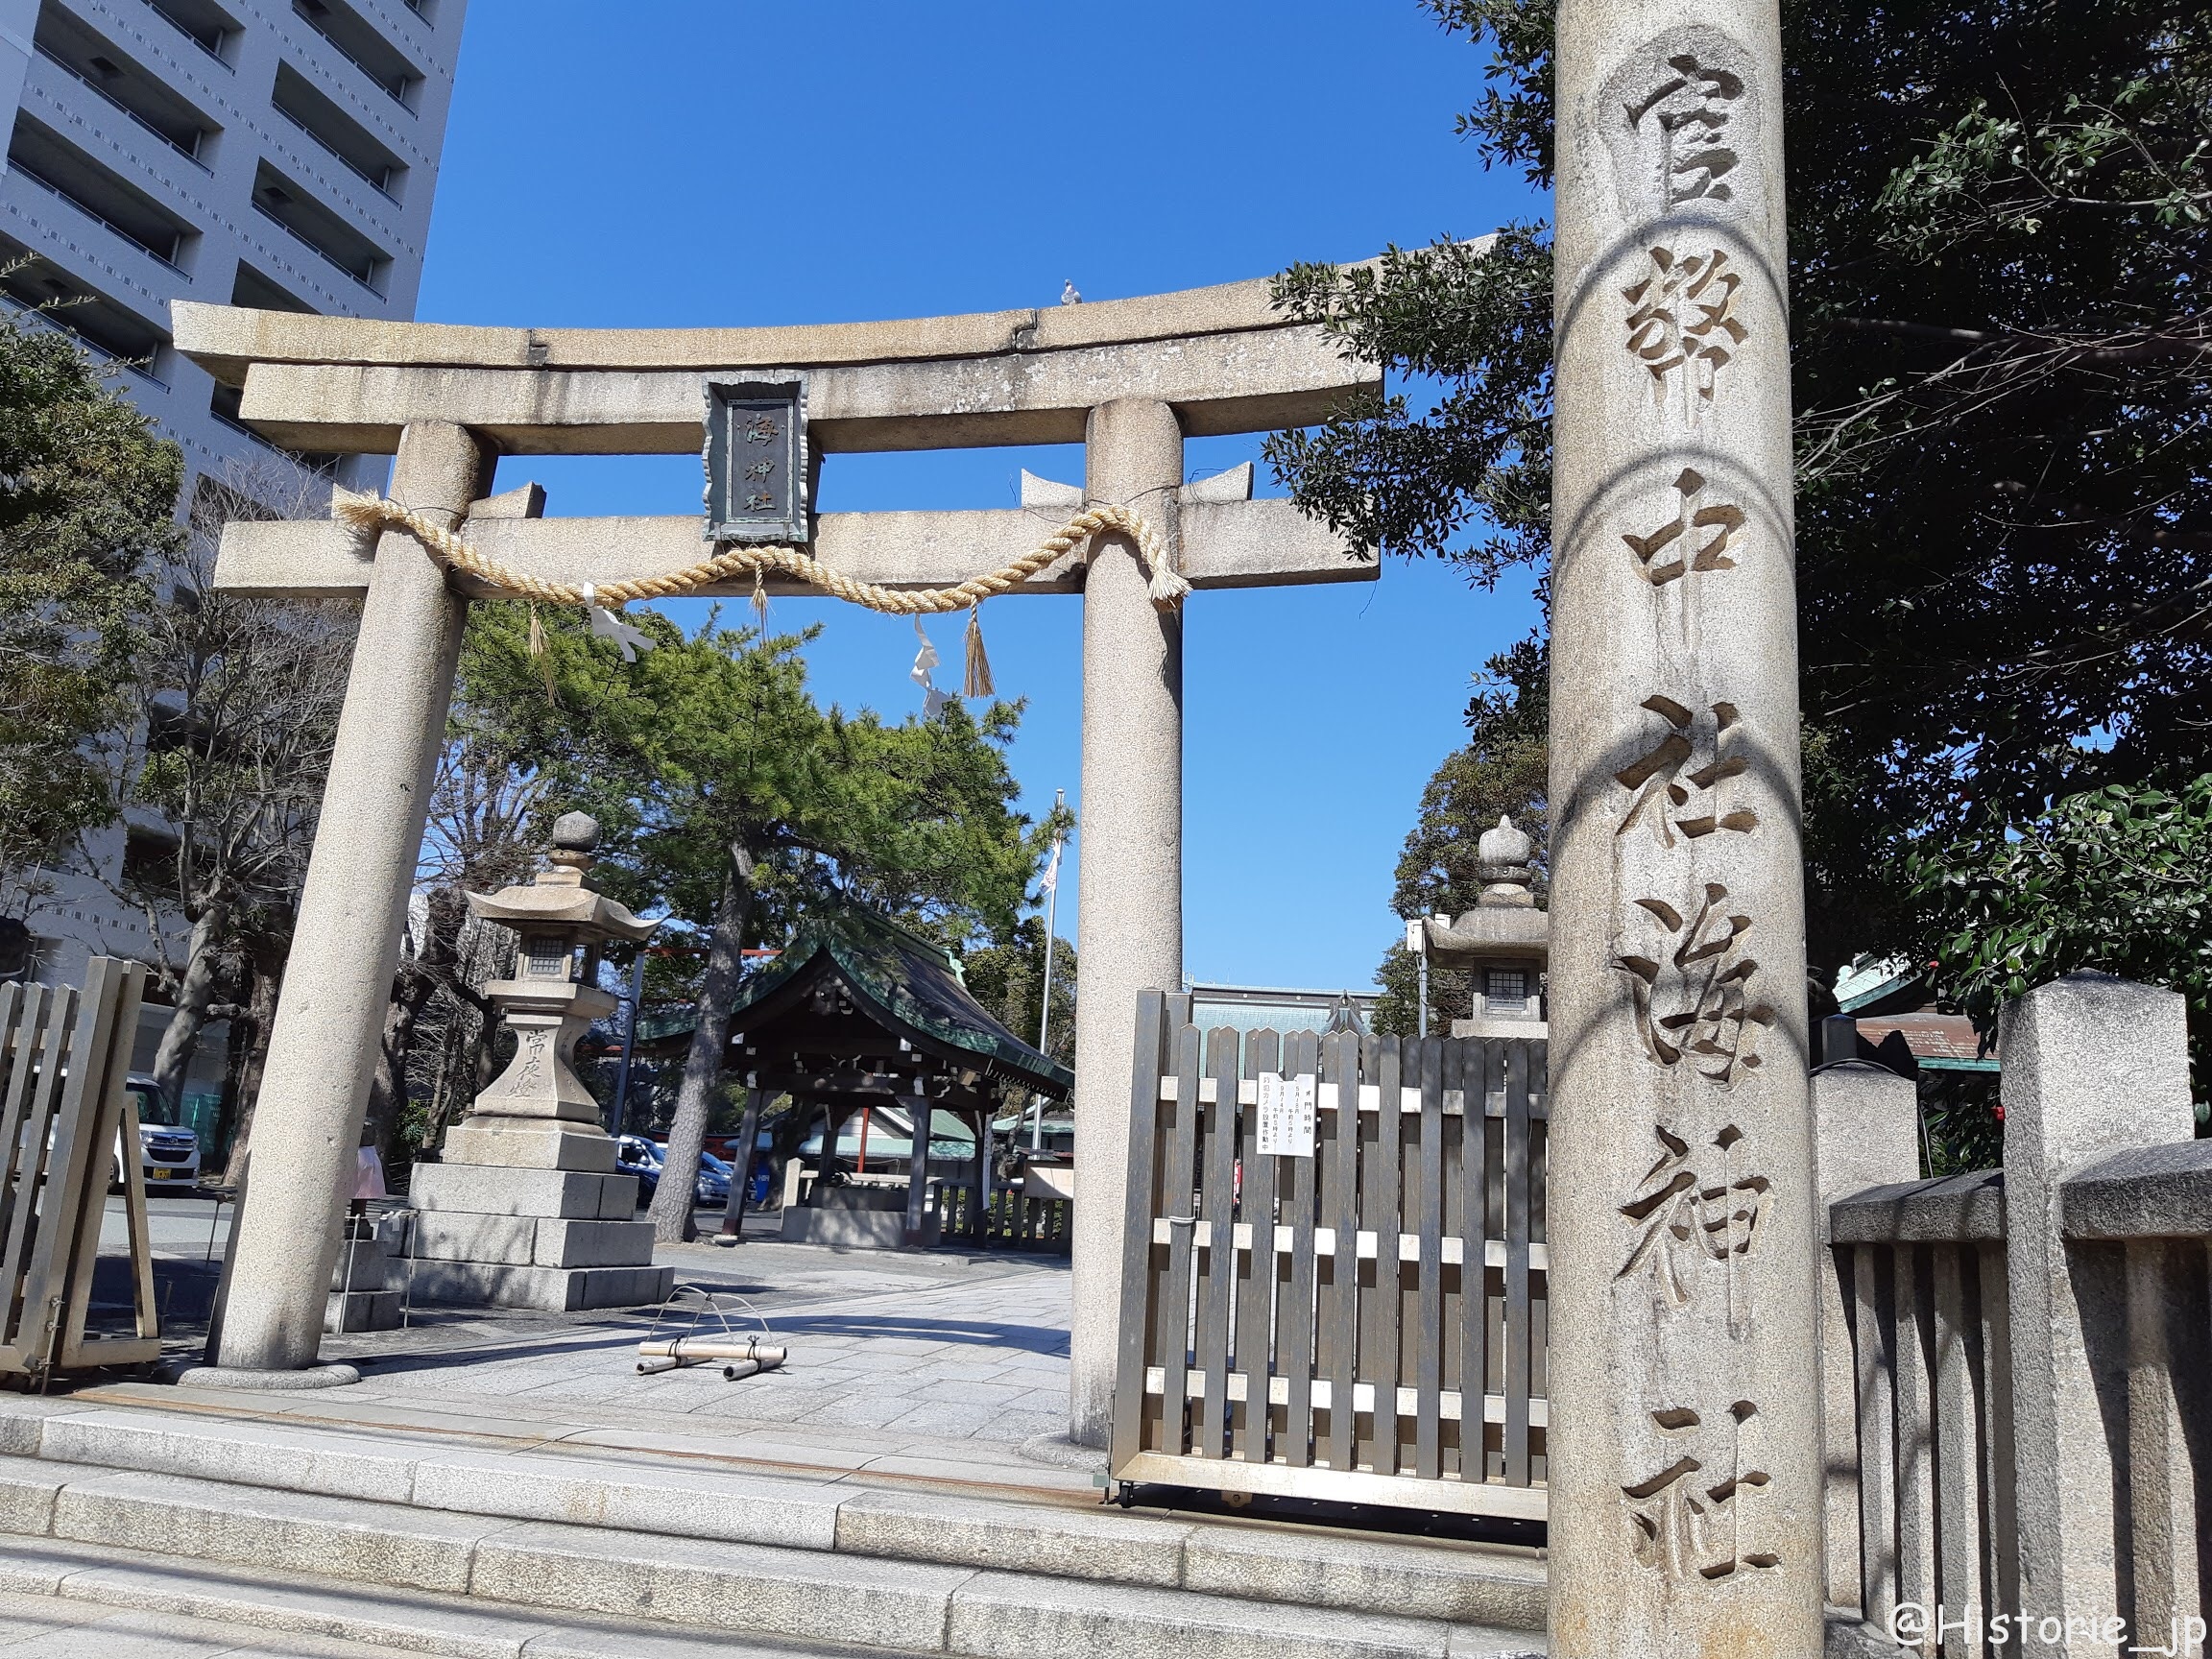 境内入口にある石の鳥居の扁額には「海神社」・その側には「官弊 中社 海神社」の石柱・ぷらり歴史路☆彡